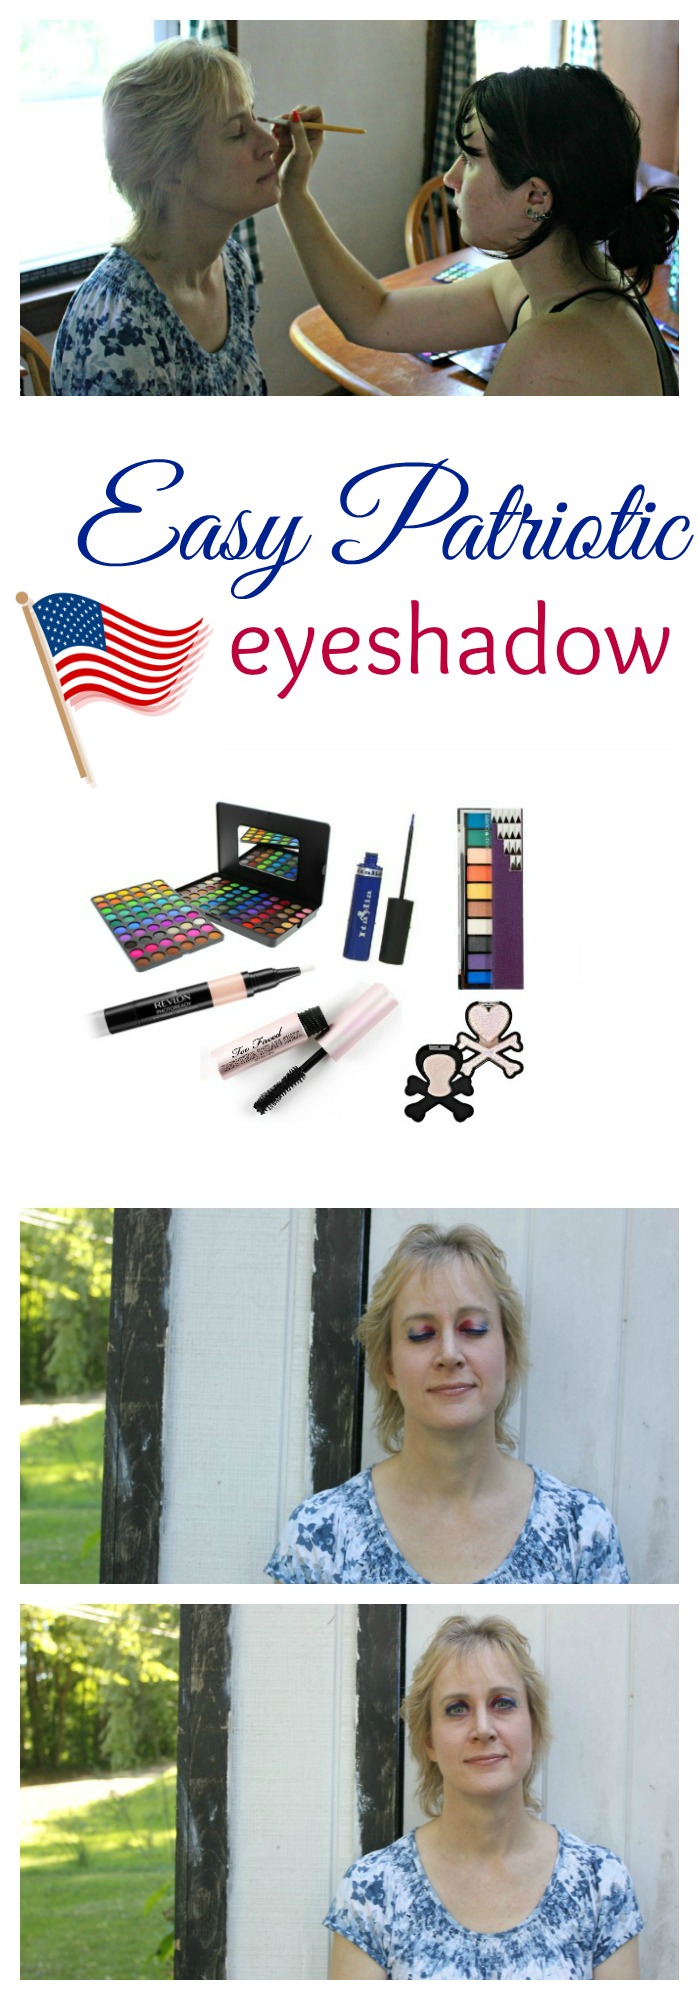 Easy patriotic eyeshadow